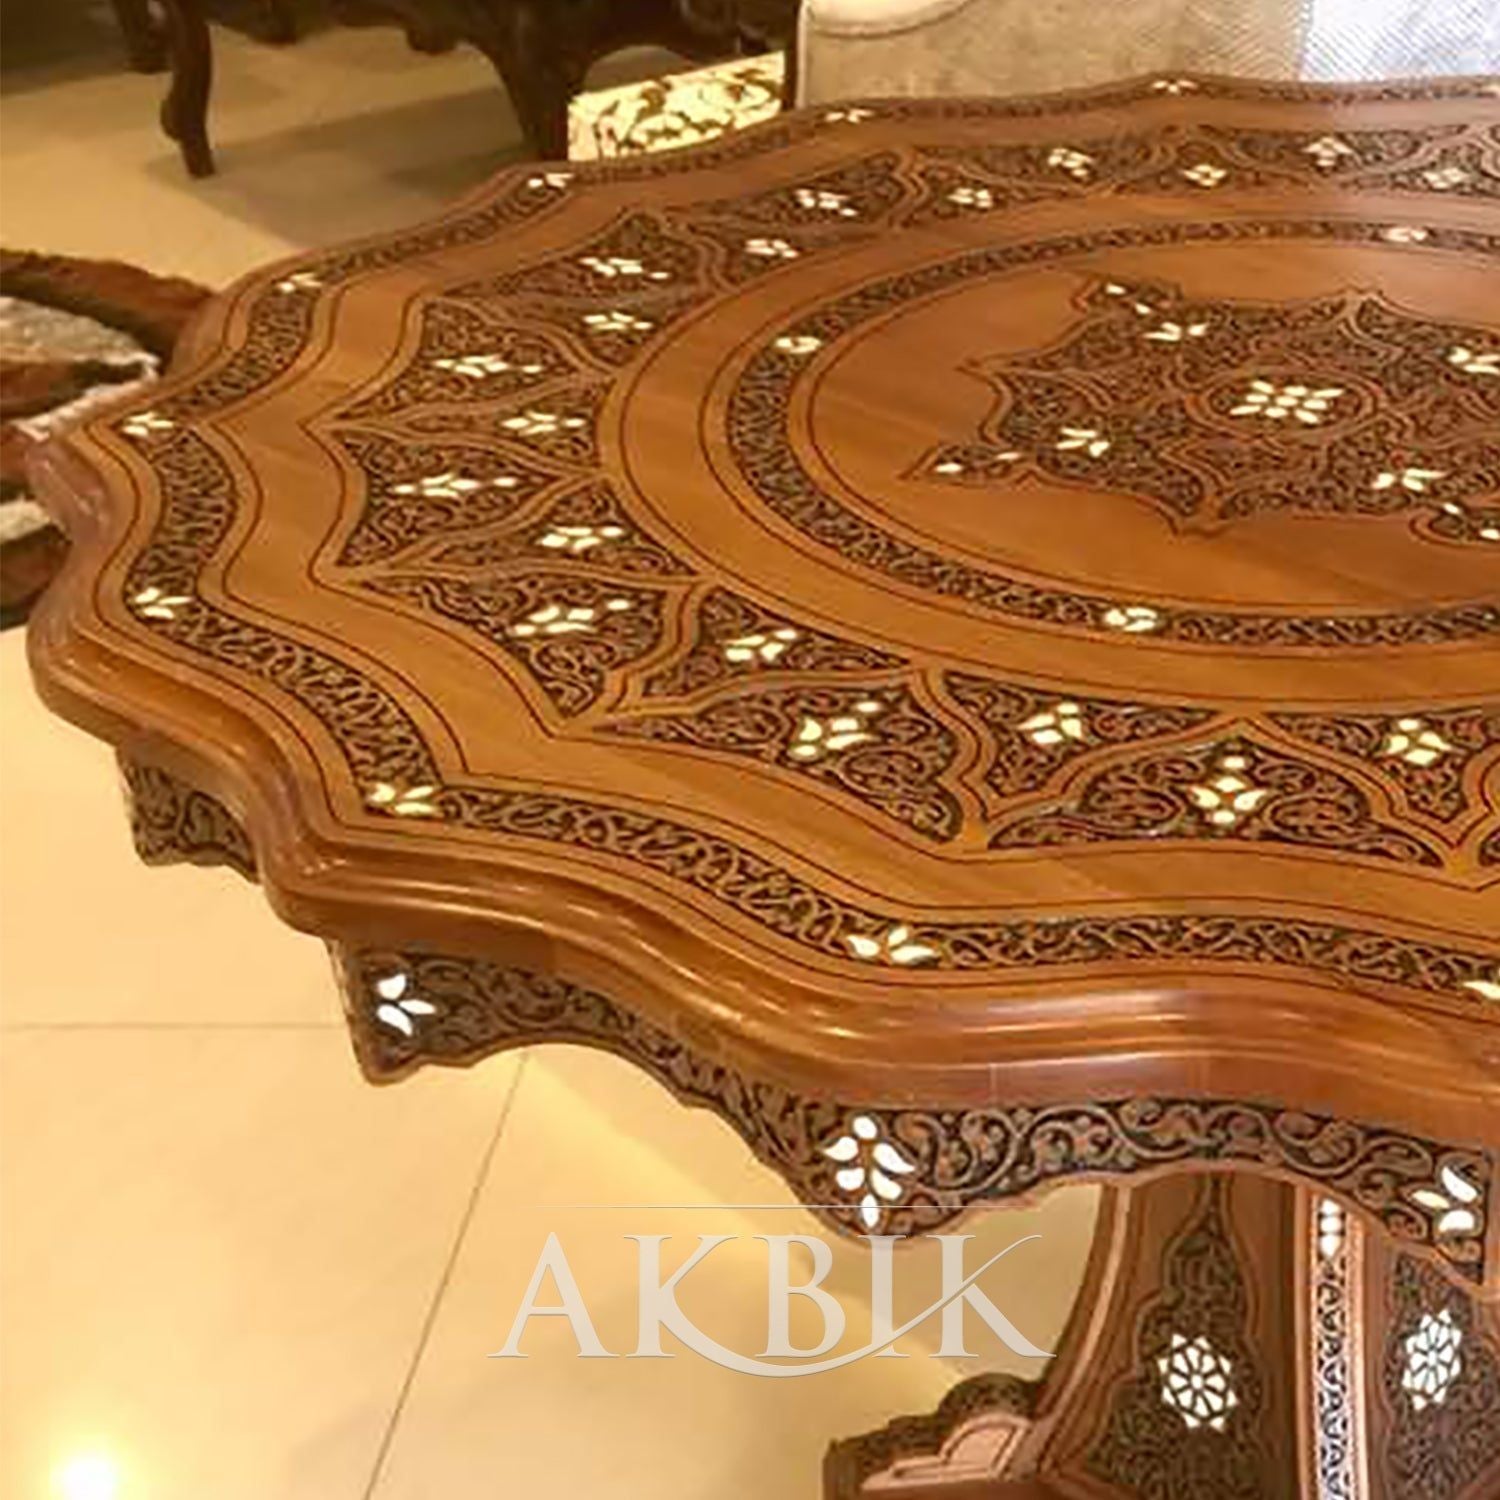 Celestial Formation Dining Table - AKBIK Furniture & Design